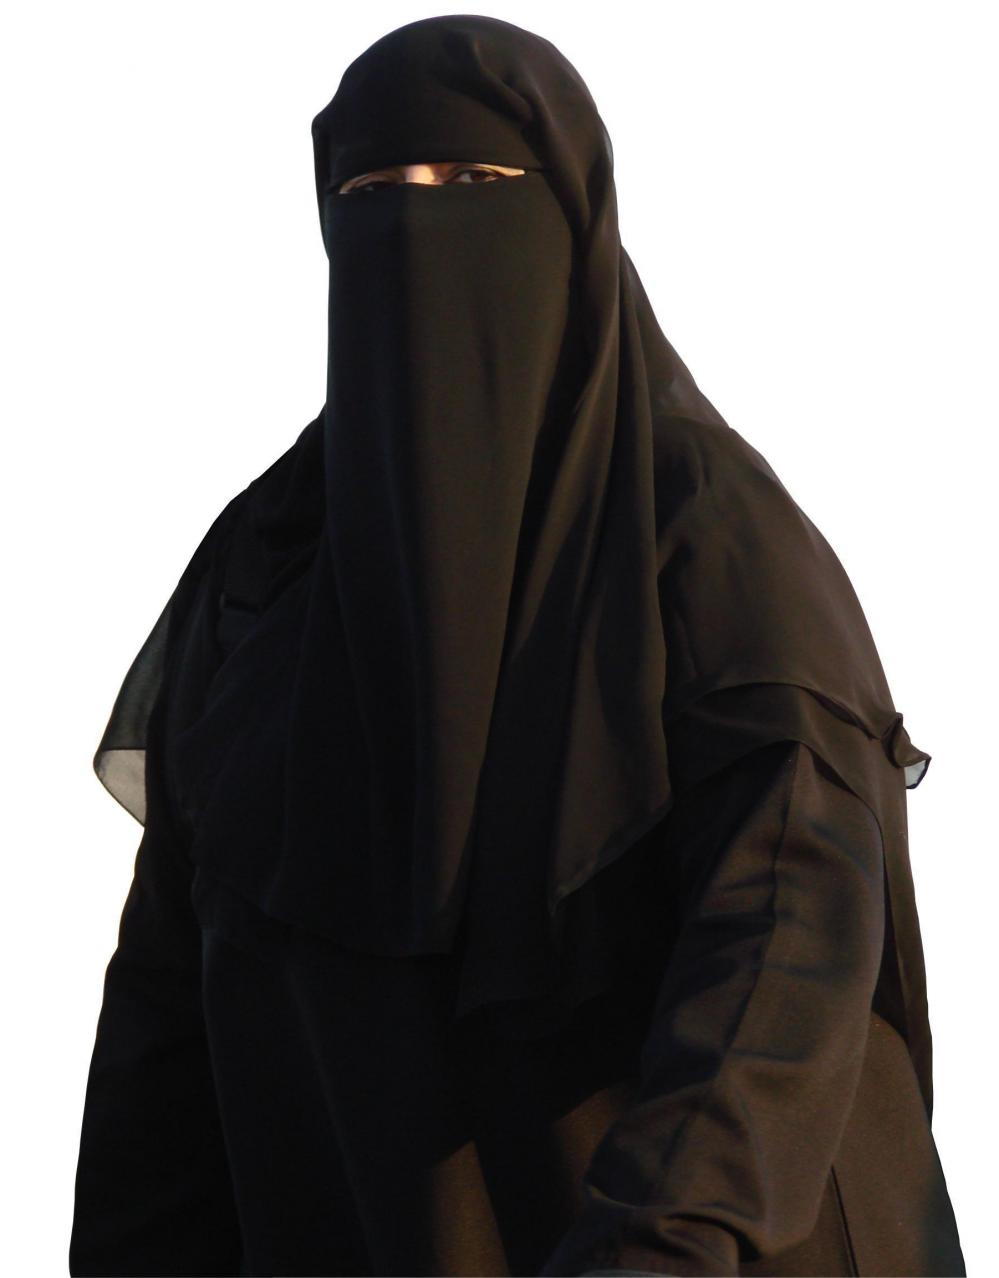 Debating types of ‘Islamic dress’ (Hijab, Niqab, Burqa): Symbols of ...